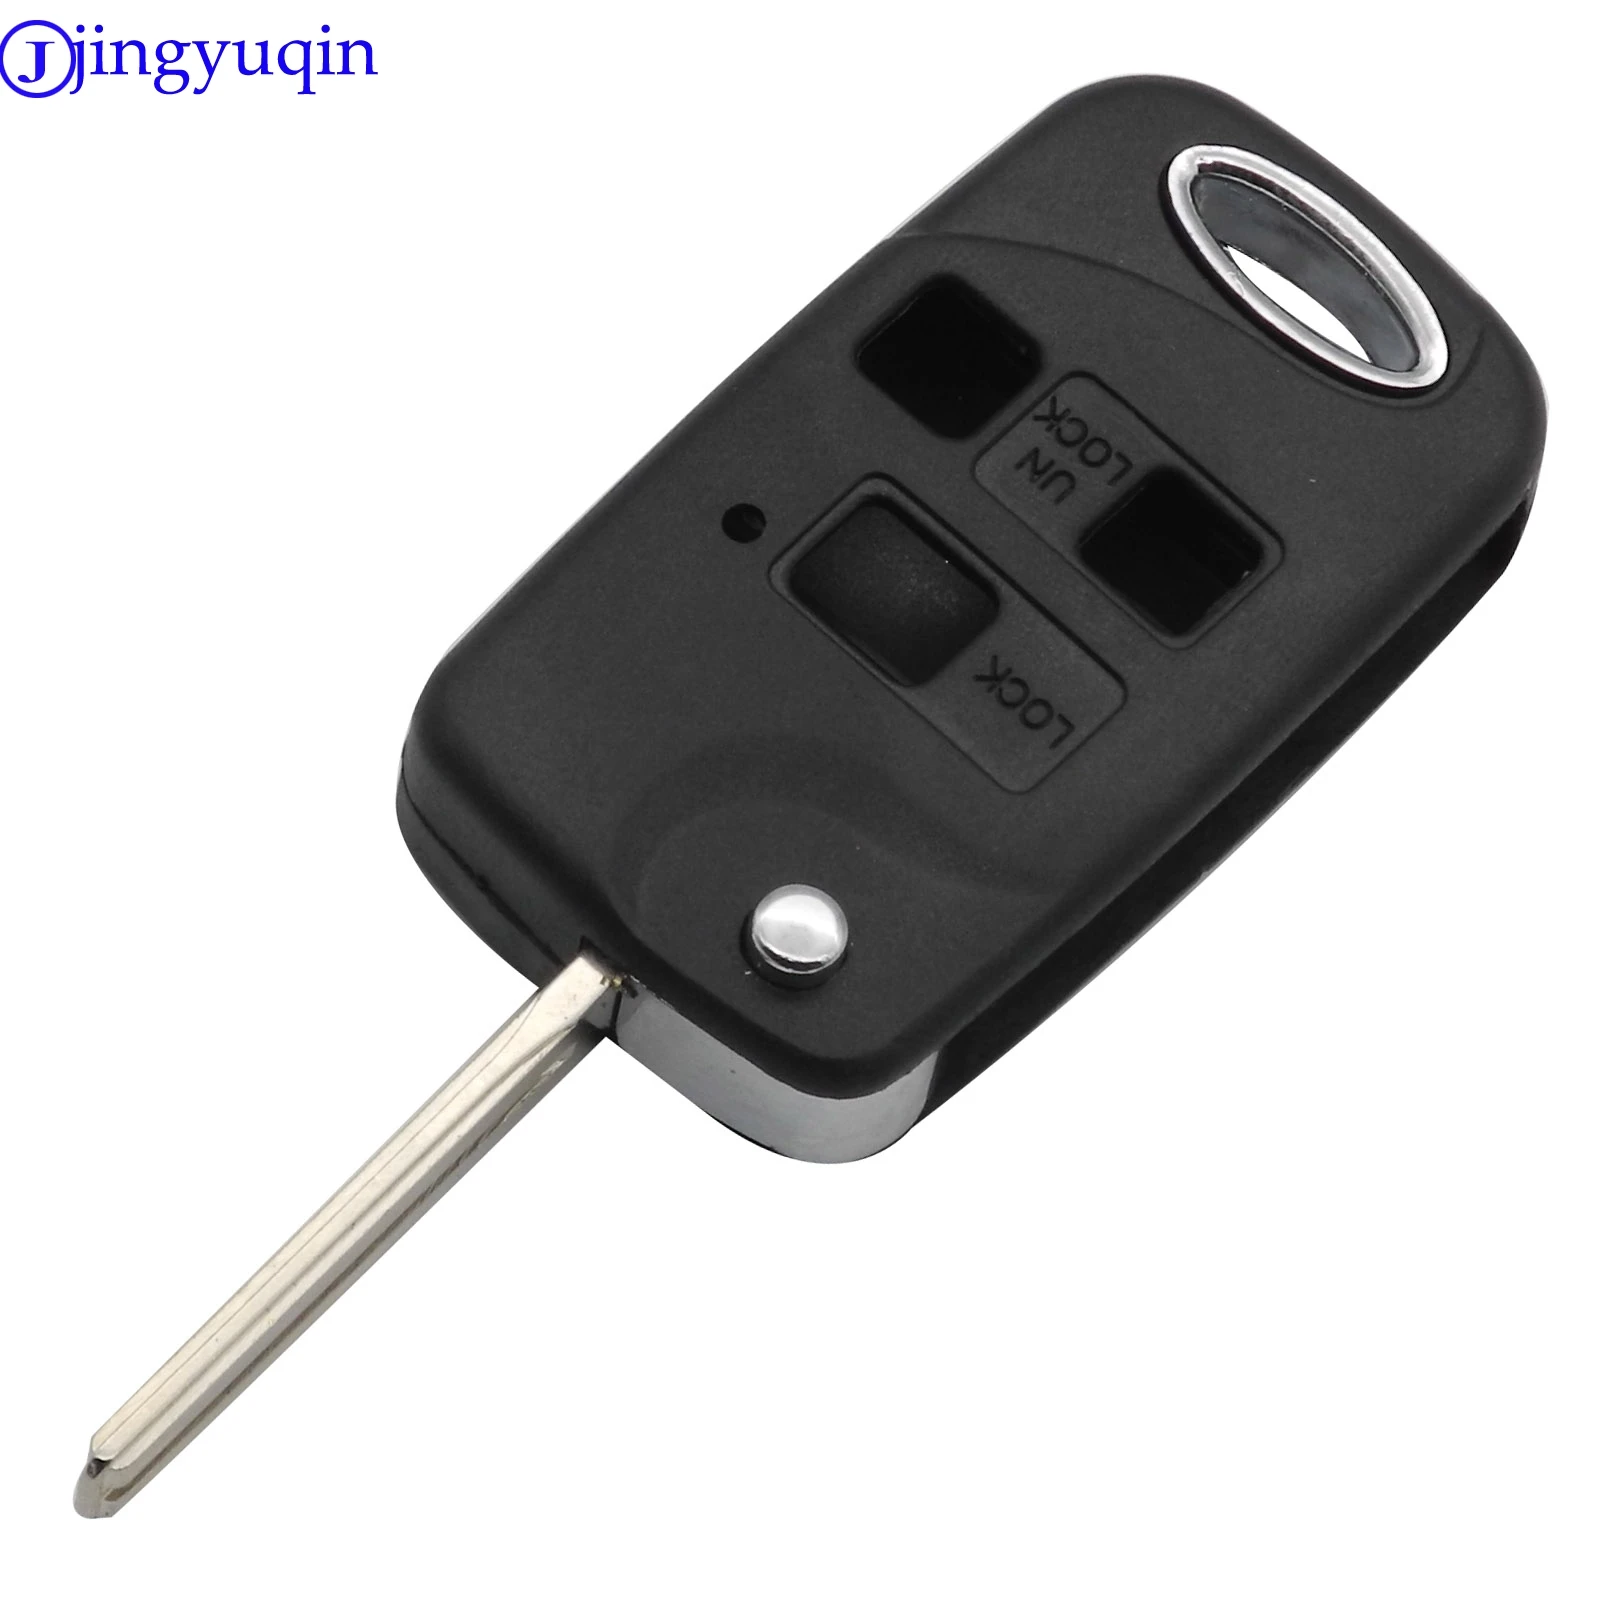 Jingyuqin 2/3 кнопки дистанционного управления Fob модифицированный флип-чехол для ключей для Toyota Corolla Yaris Carina Cruiser Camry Avensis автомобильный чехол для ключей